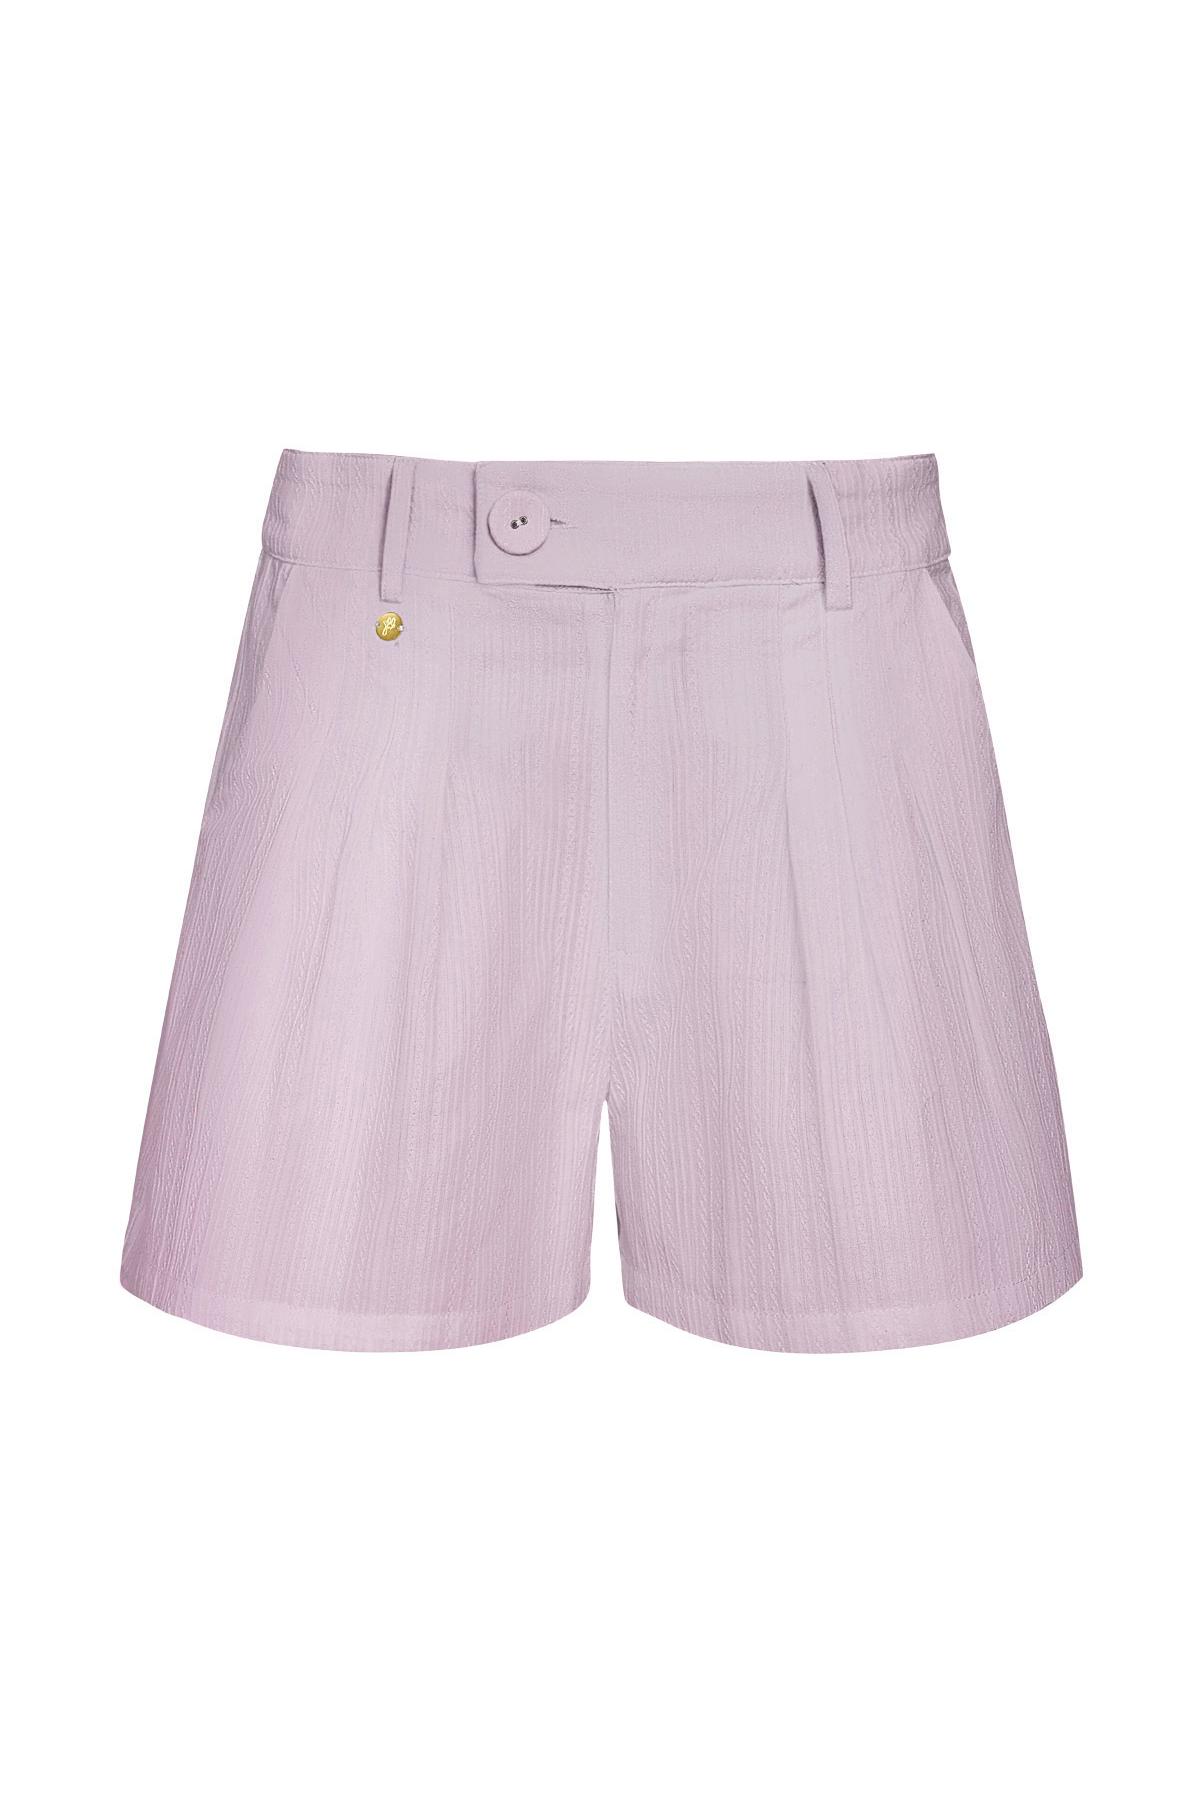 Dettaglio bottoni pantaloncini - lilla Lilac M h5 